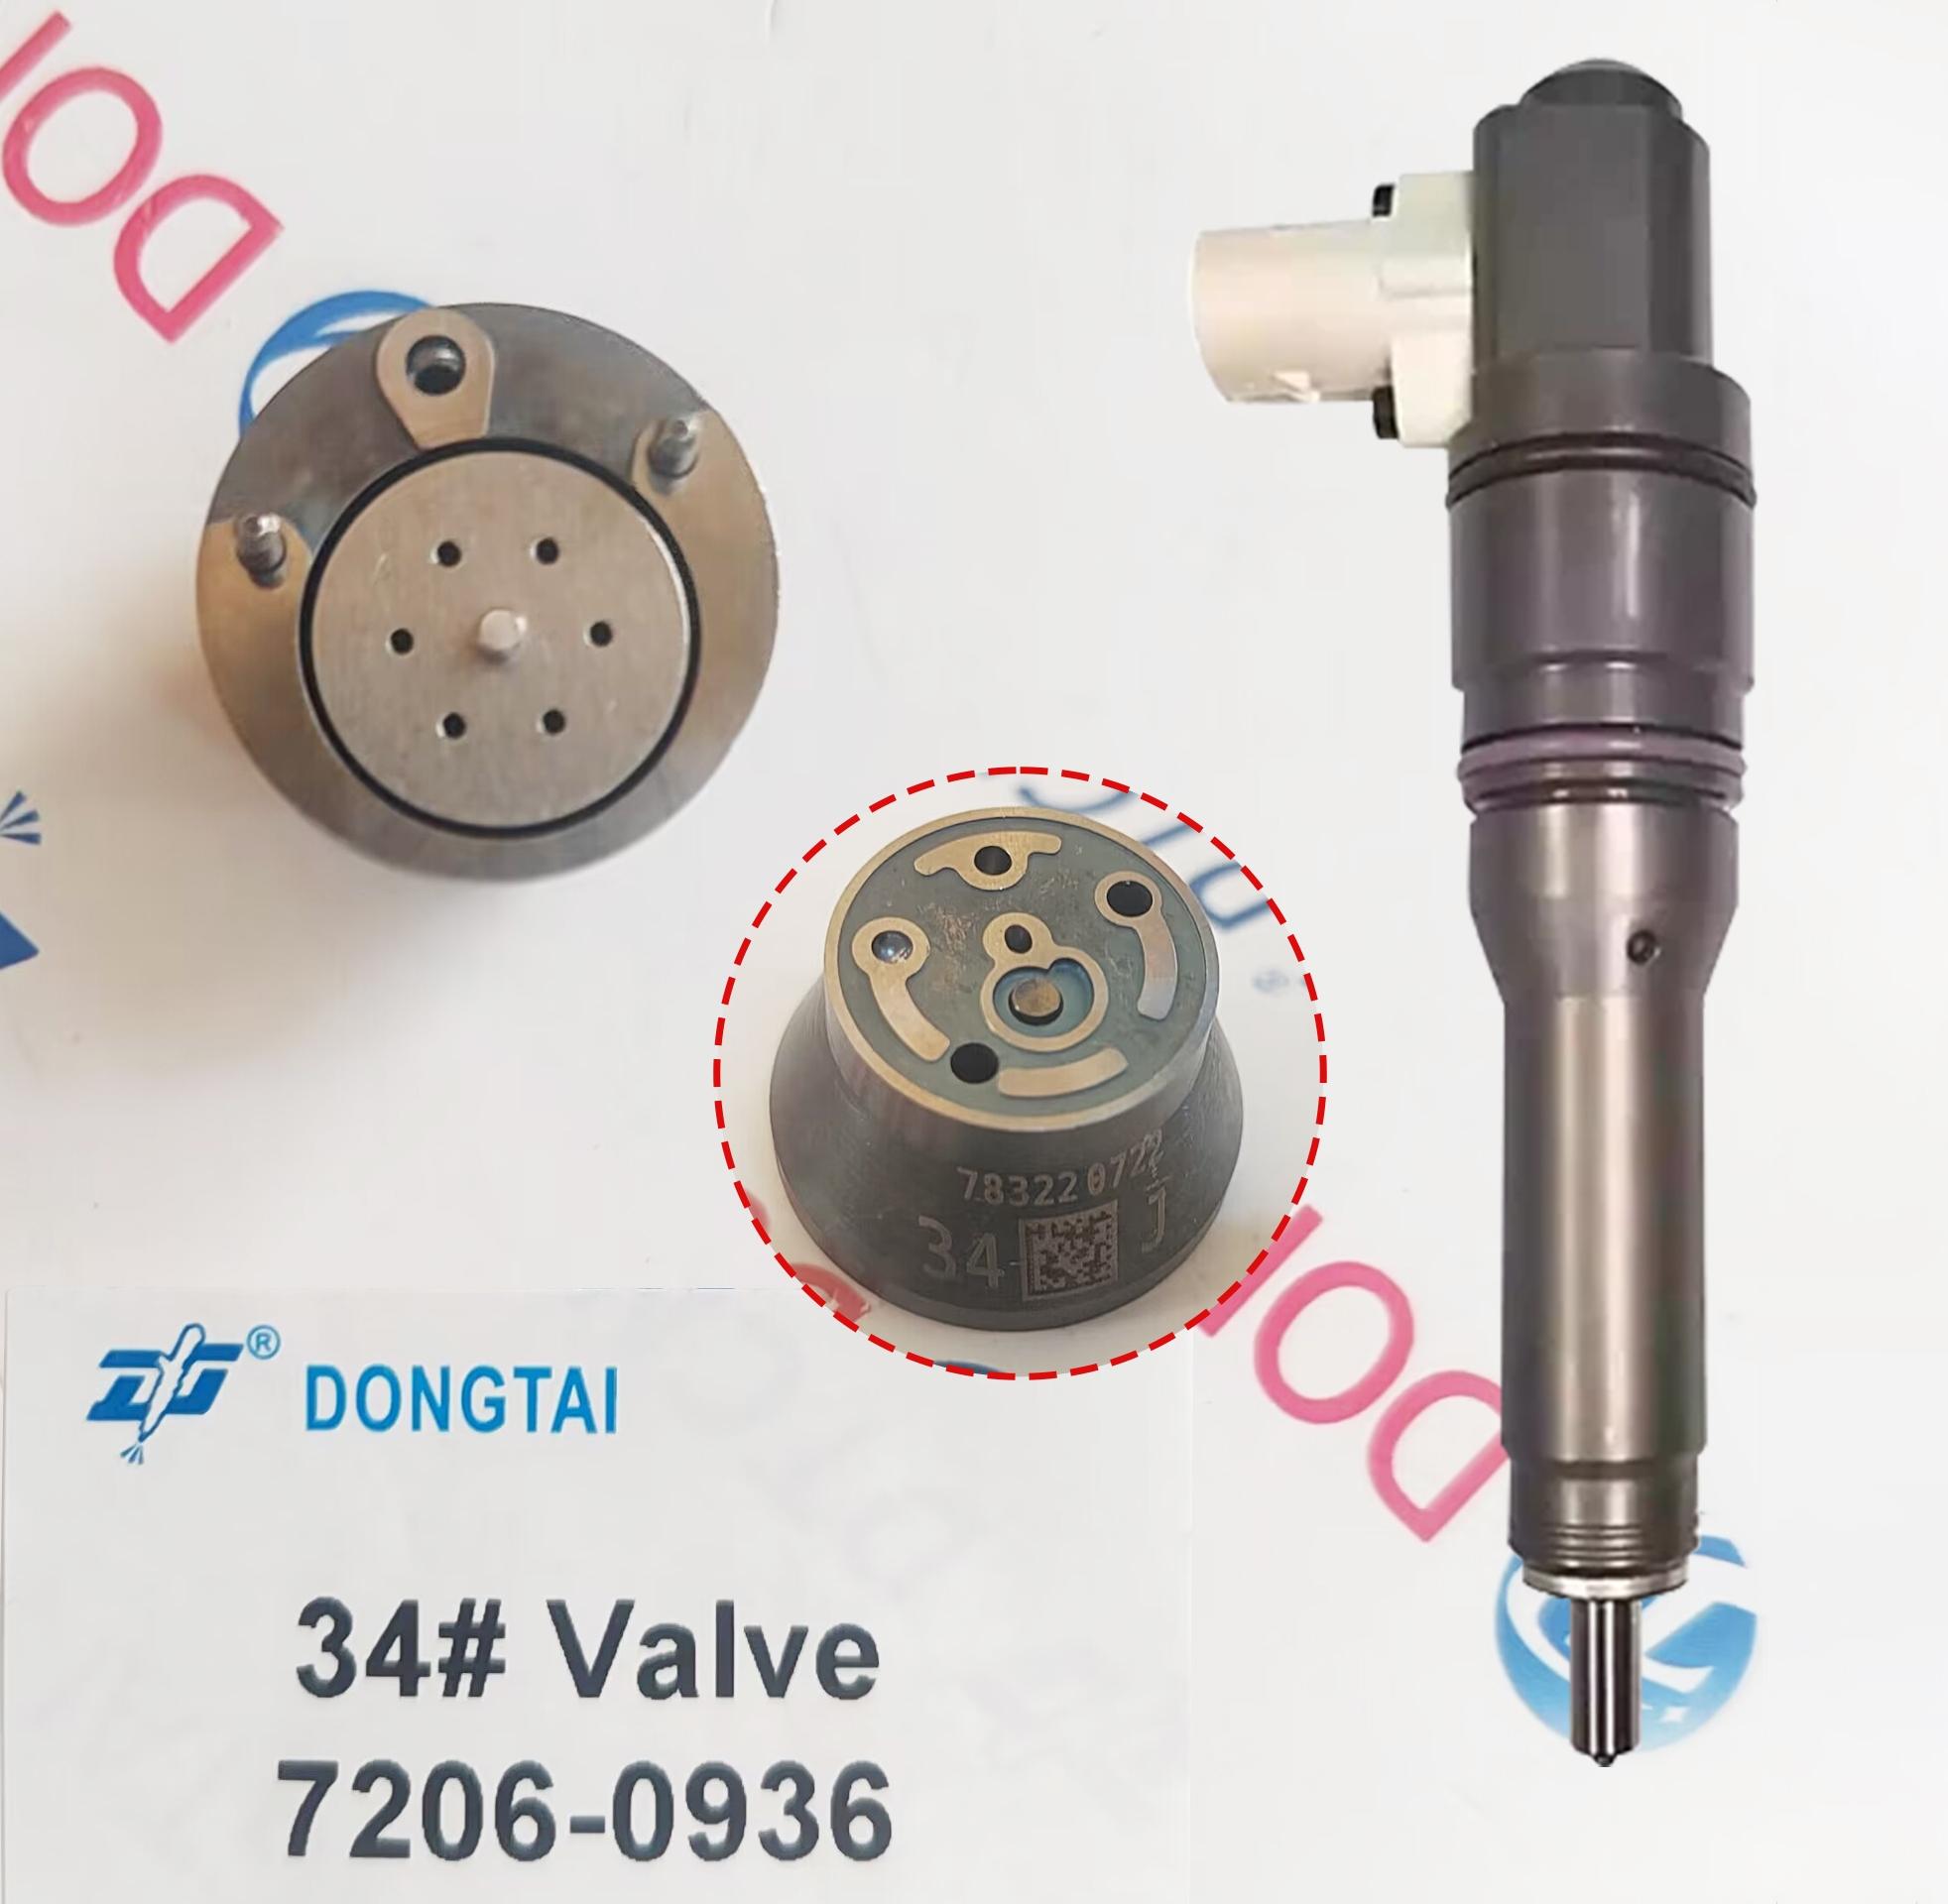 NO.511(10-2) DAF EURO6 Valve  34# : 7206-0936 for DELPHI  Injector 1972591, 2005596, 1972590